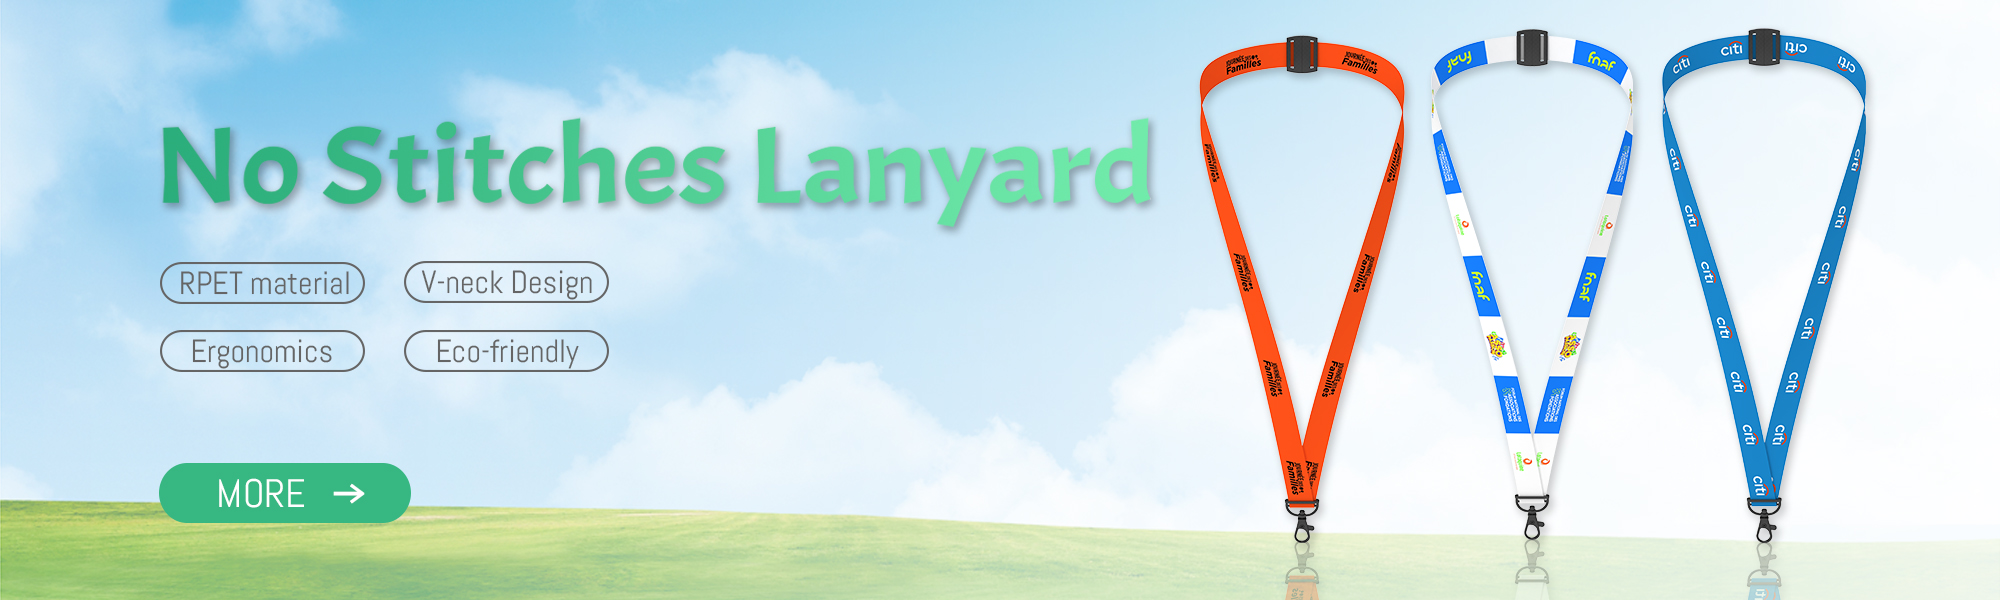 Lanyard Coach, Phone Lanyard, Retractable Lanyard - Xingchun